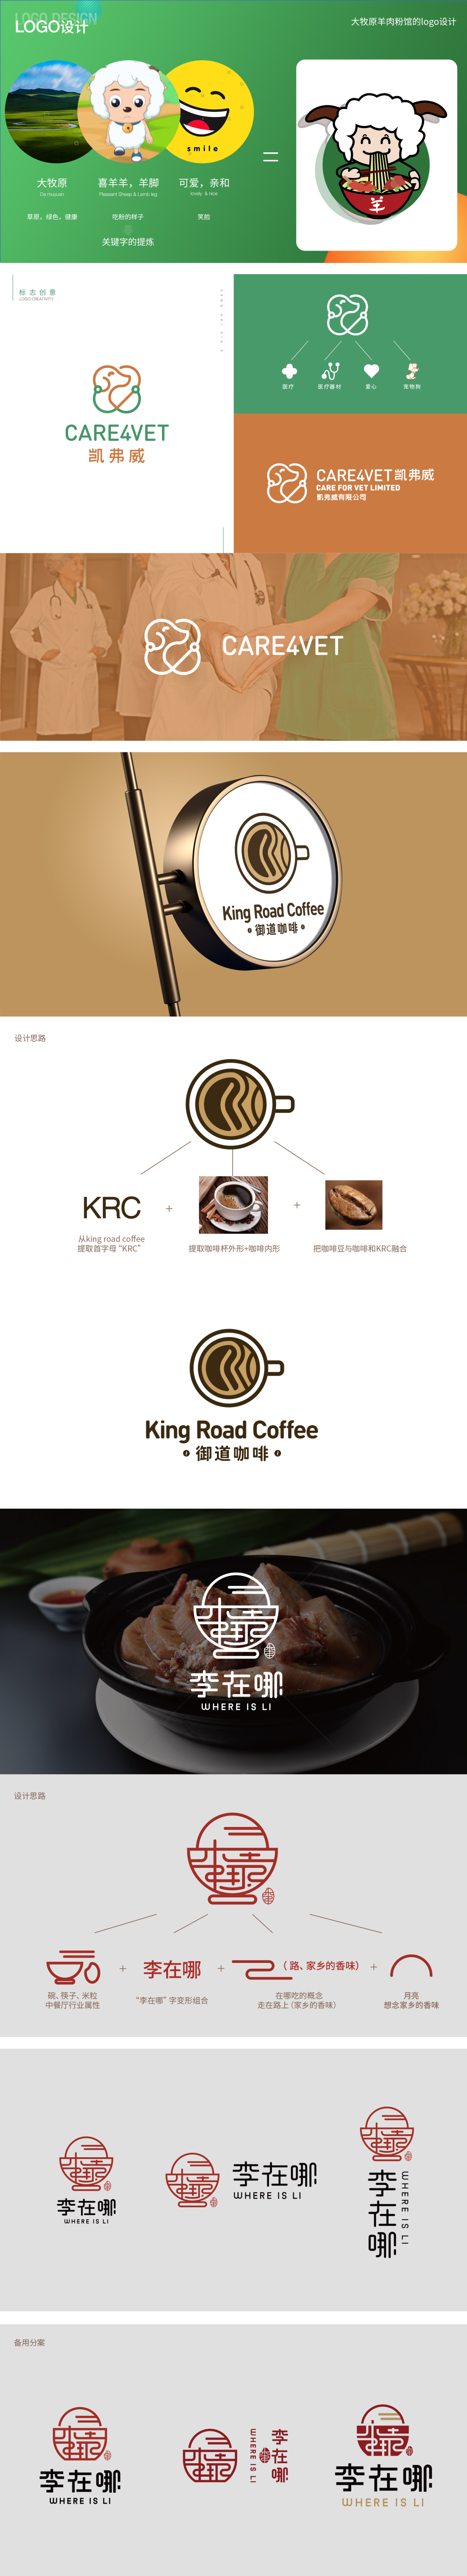 淘宝美工海霞logo设计  餐饮 宠物医院 咖啡作品